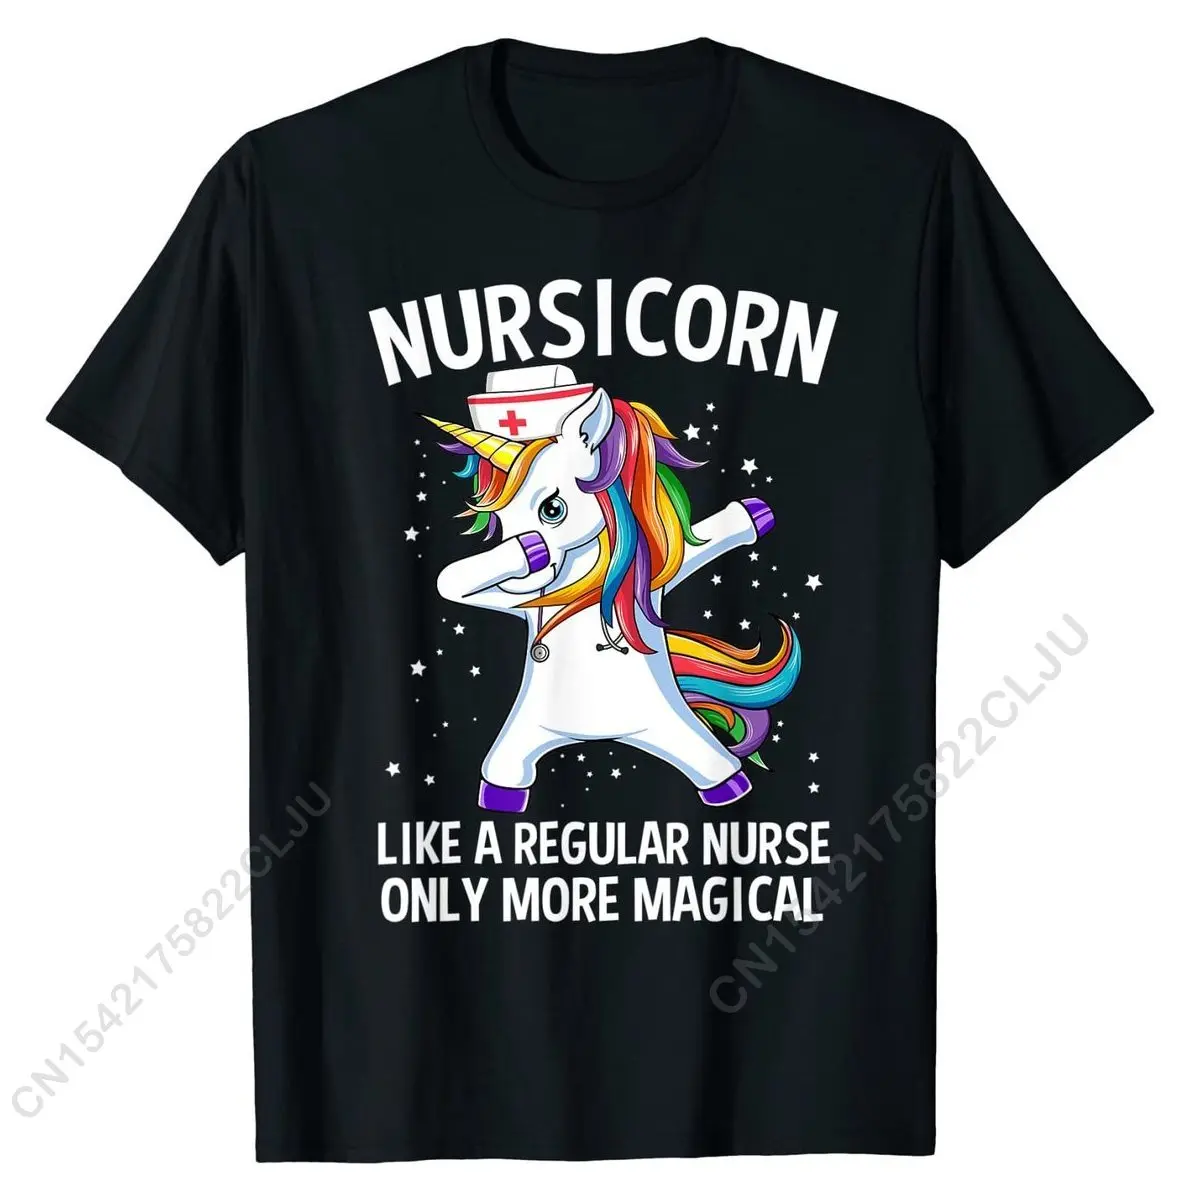 Вытирающий Единорог Nursicorn, Забавная футболка медсестры, футболки, Повседневные хлопковые мужские футболки, дизайн - 0